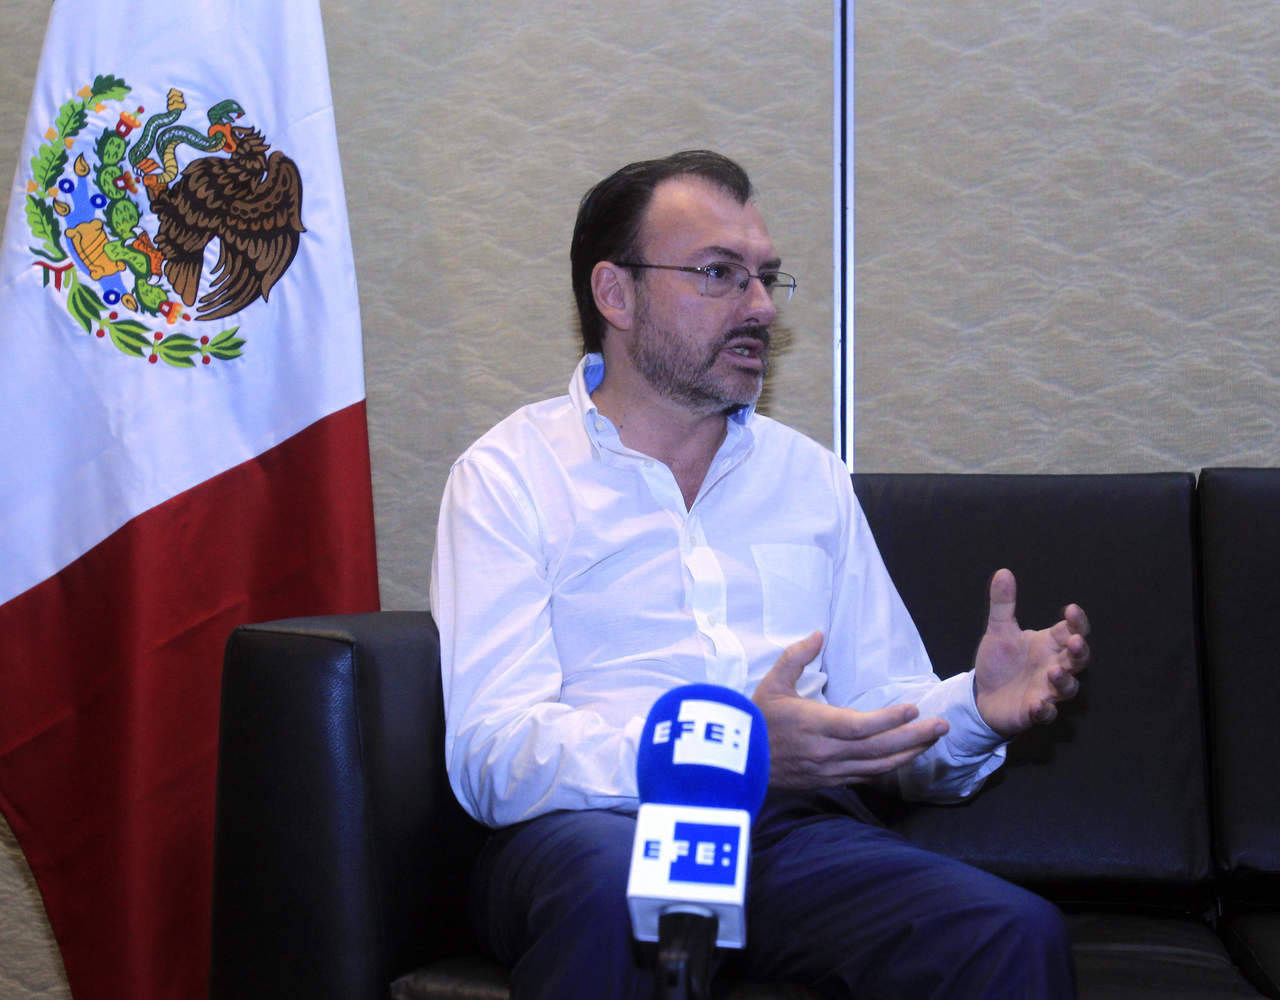 'La posición de México es clara, extendemos la mano a los hermanos venezolanos, queremos ser parte de la solución, no del problema', apuntó. (EFE)